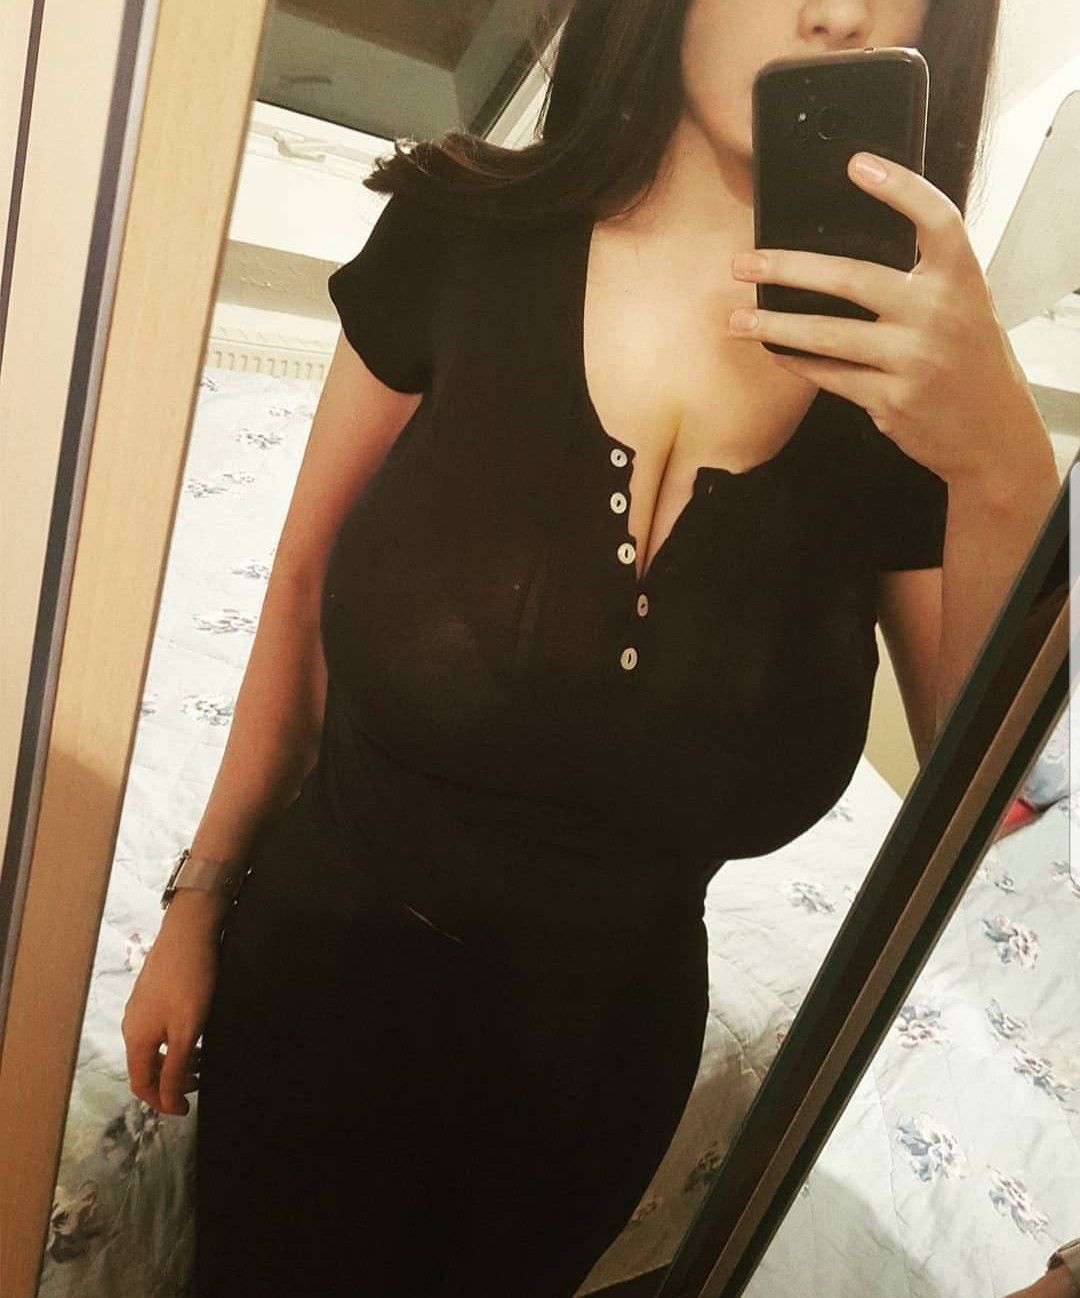 Best of Amateur big boob selfies